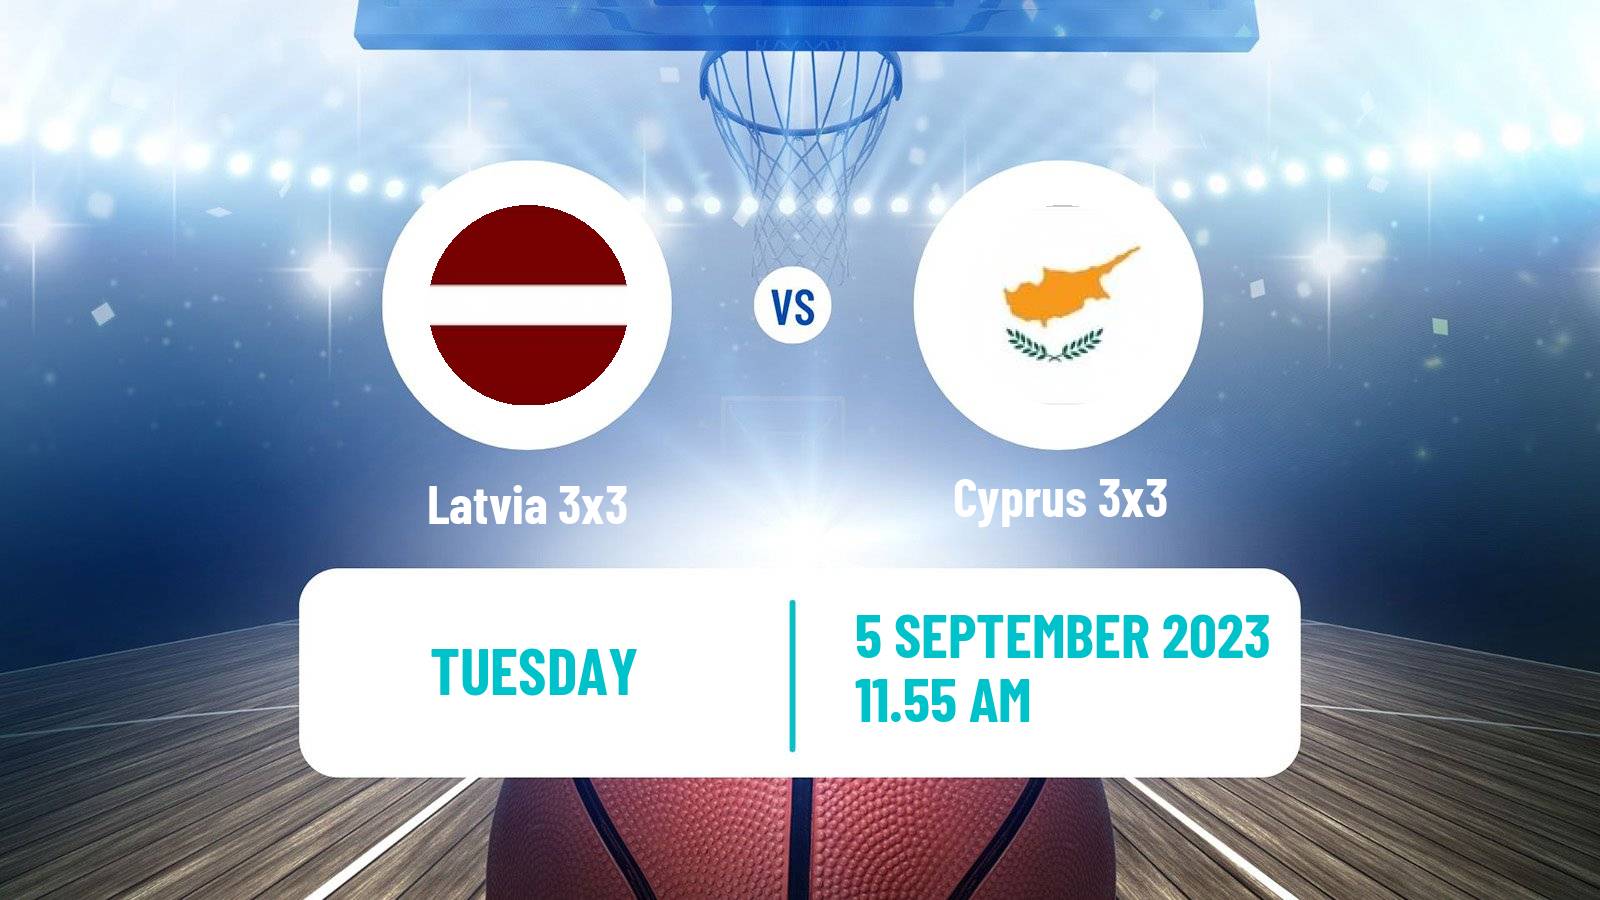 Basketball Europe Cup Basketball 3x3 Latvia 3x3 - Cyprus 3x3